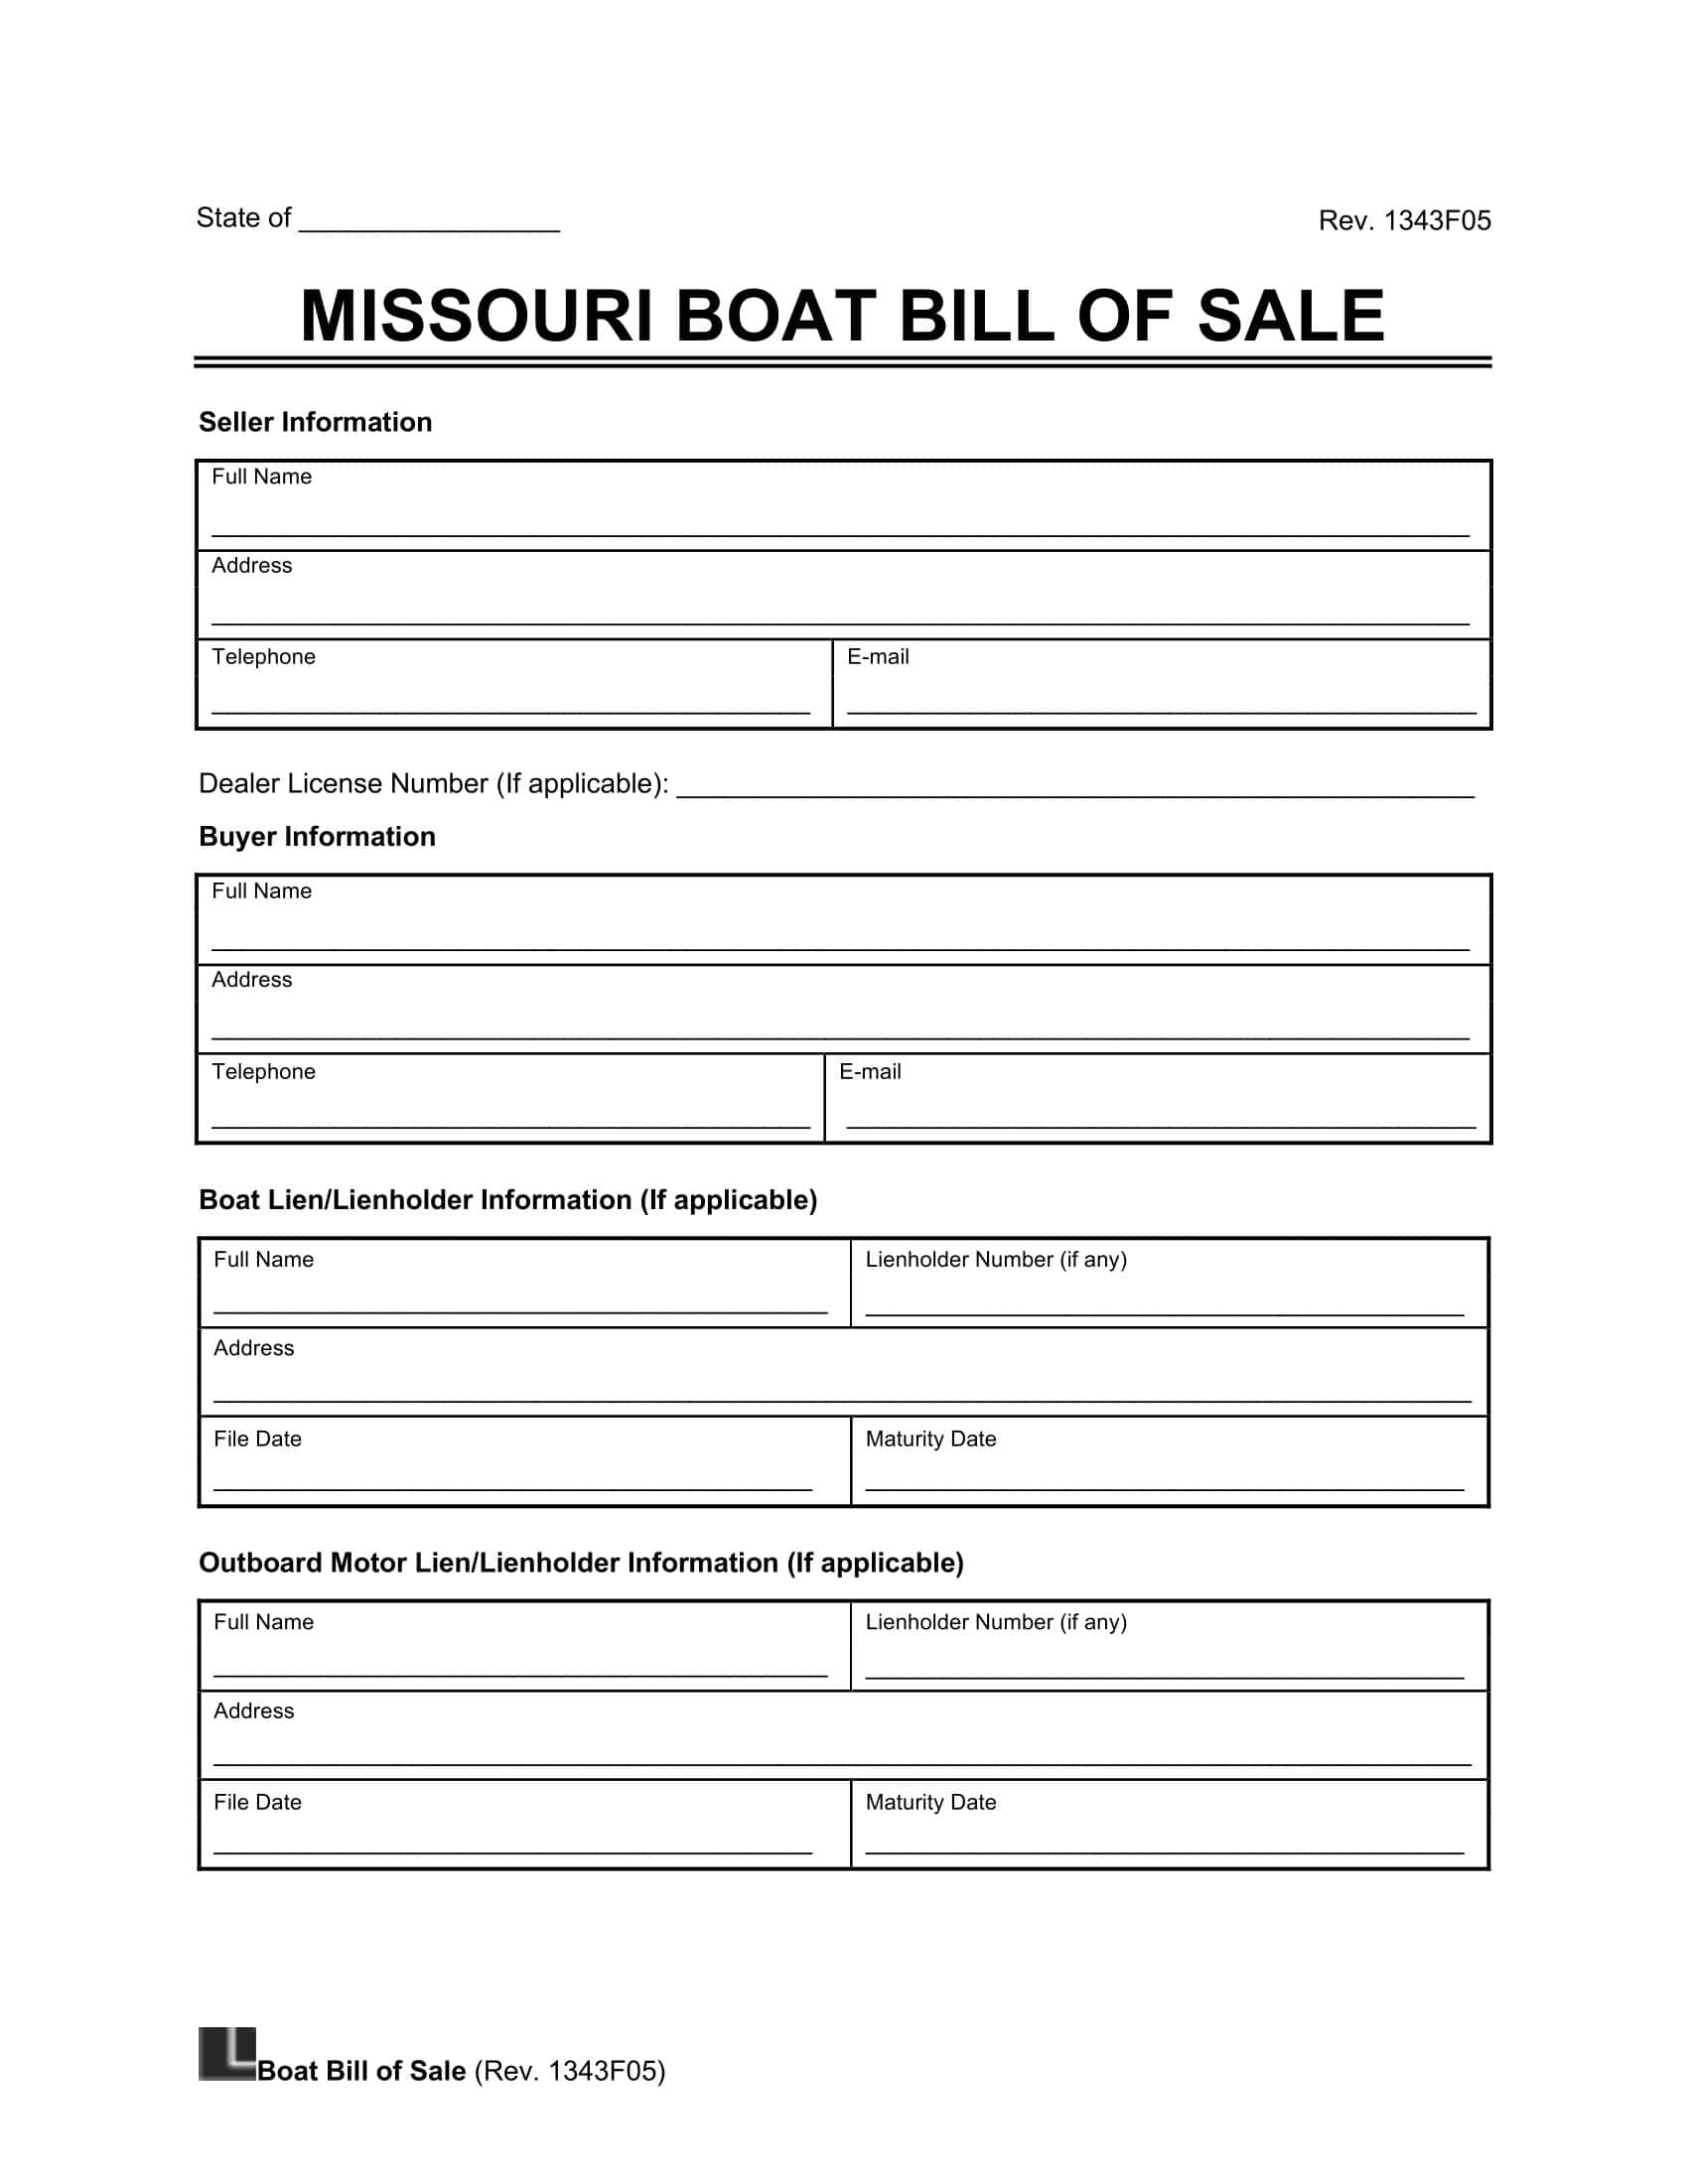 Missouri boat bill of sale screenshot